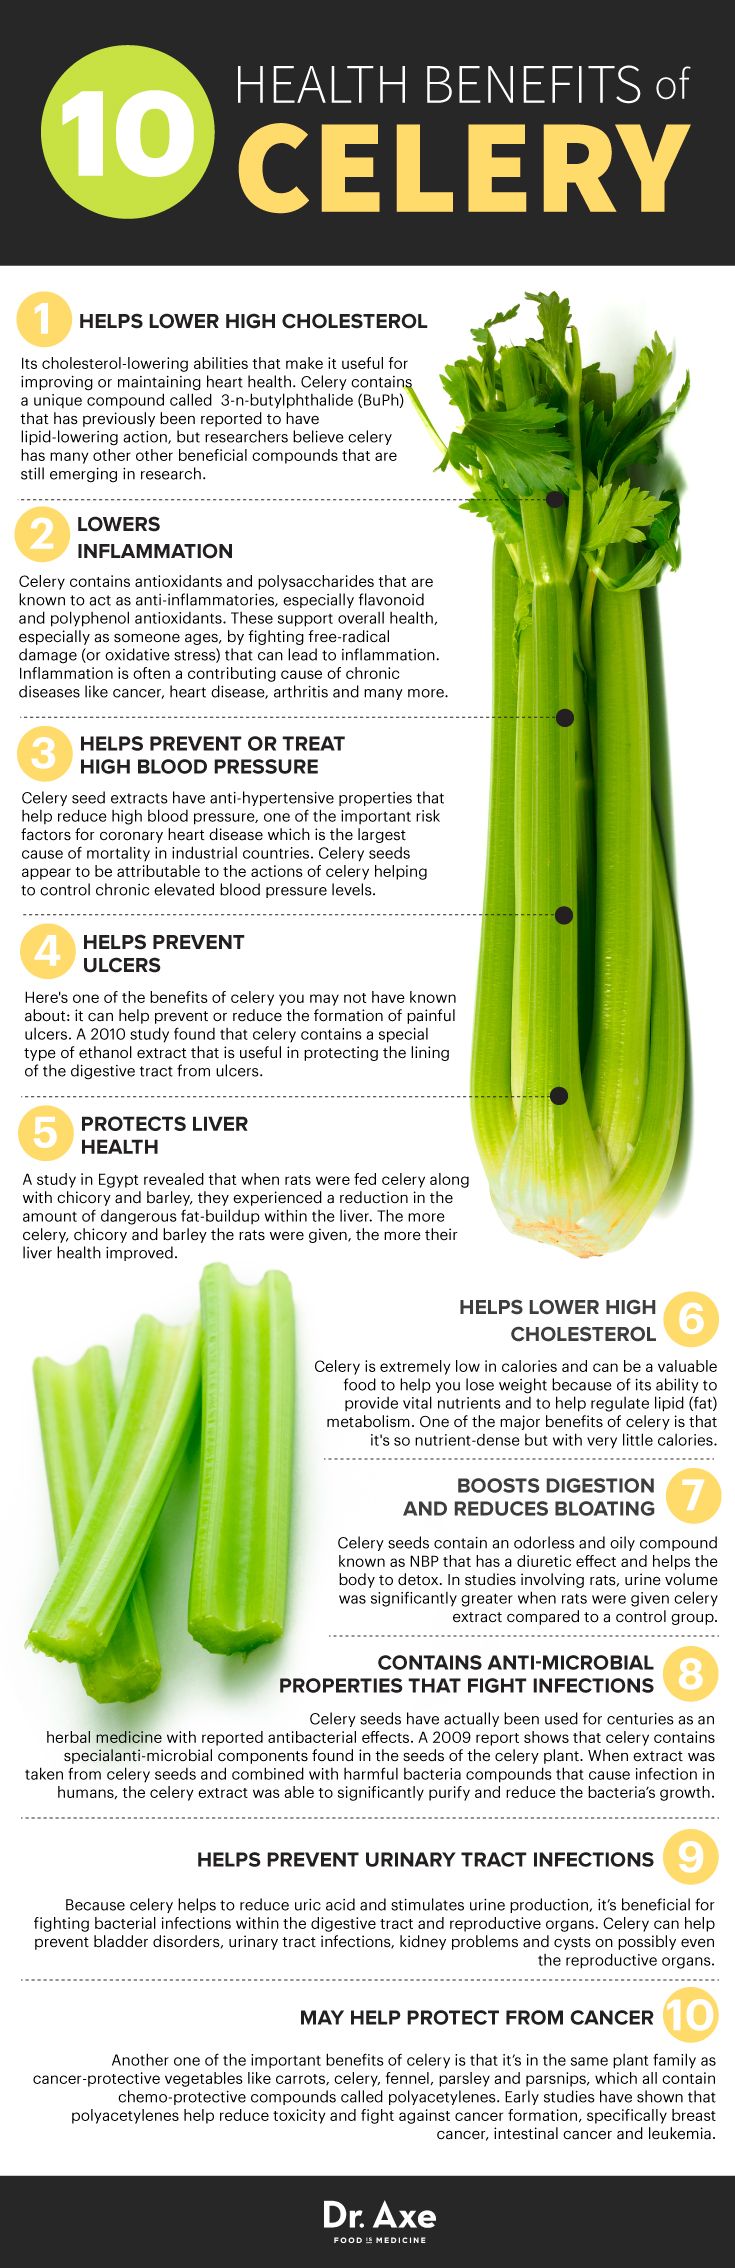 ds-benefits-of-celery